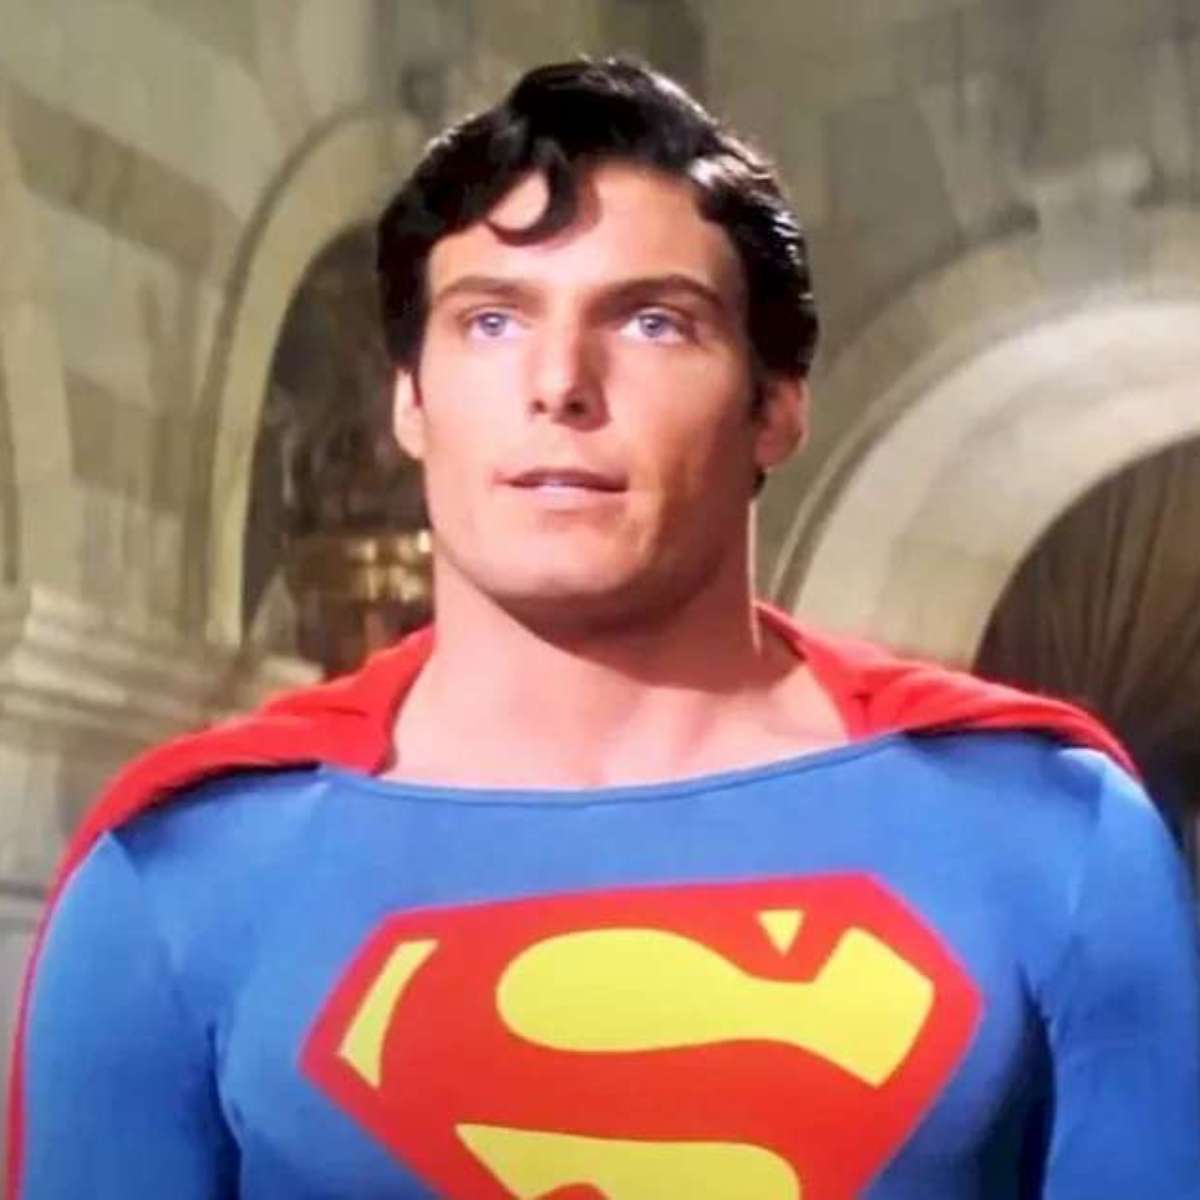 Sétima Arte em Cenas - Superman - O Filme, de Richard Donner